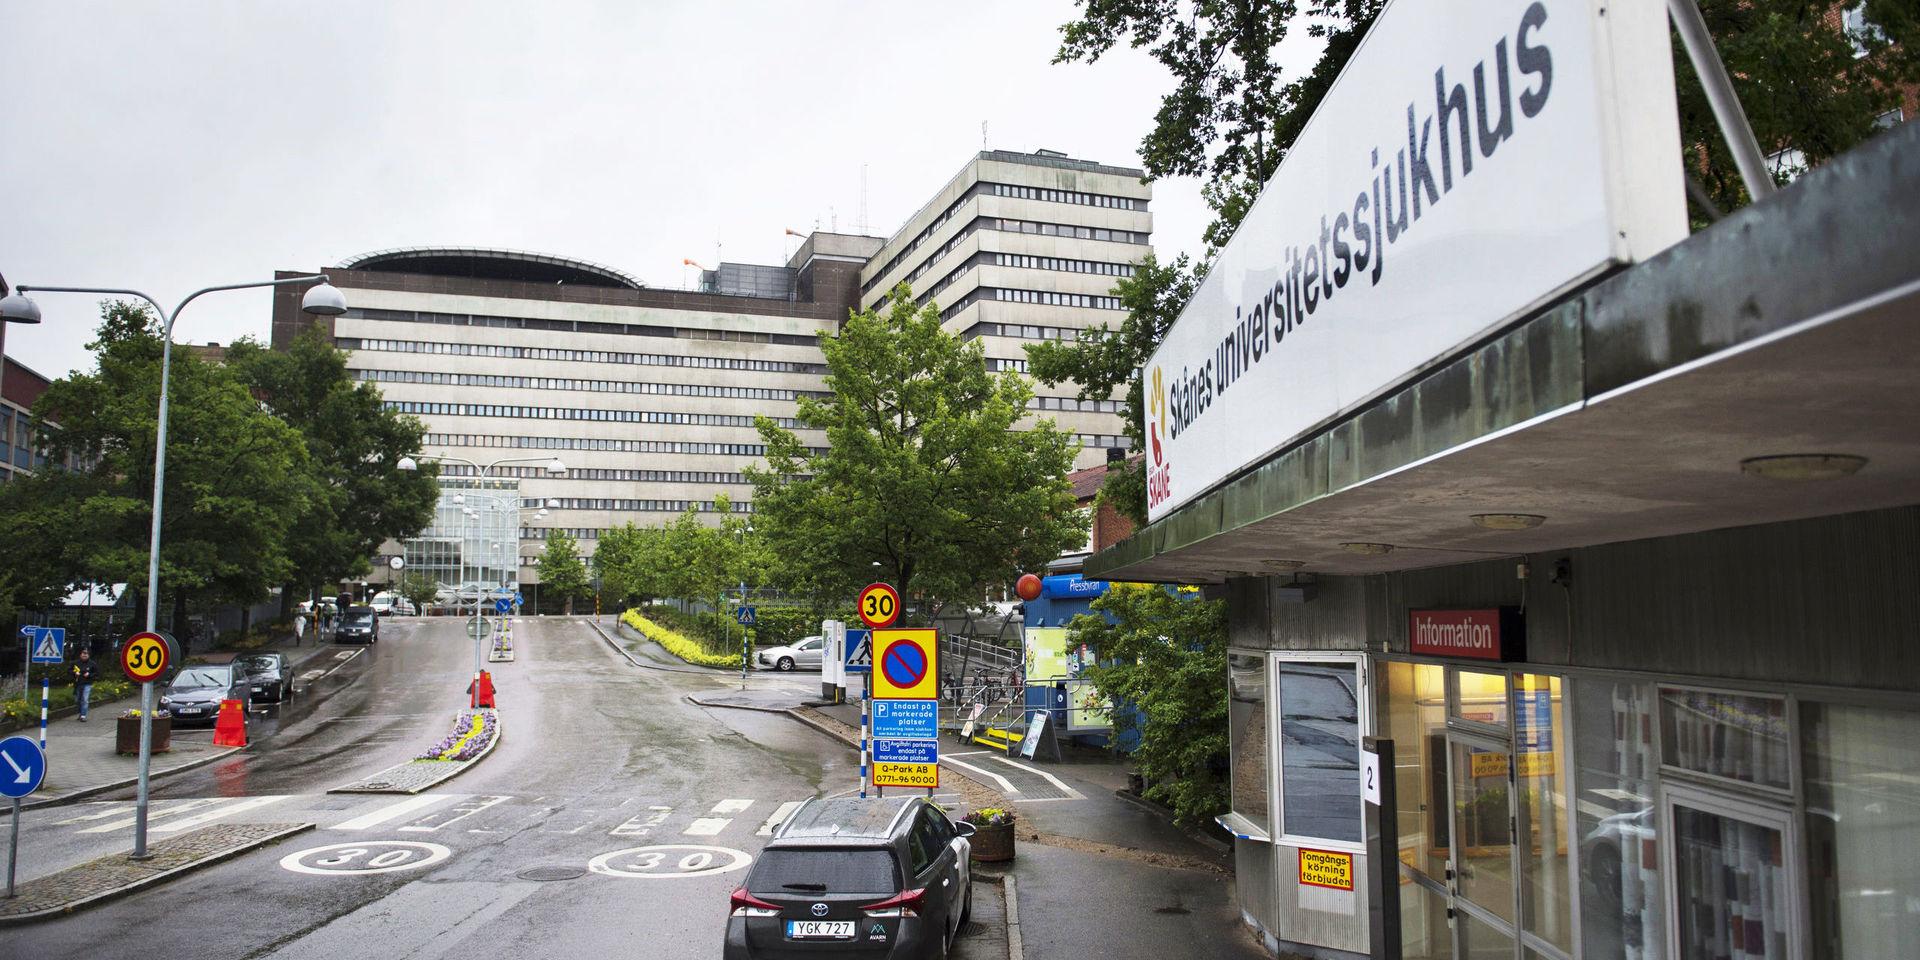 En läkarstudent som har dömts för våldtäkt av en annan läkarstuderande får studera vidare på Lunds universitet, enligt en dom från förvaltningsrätten. Arkivbild.